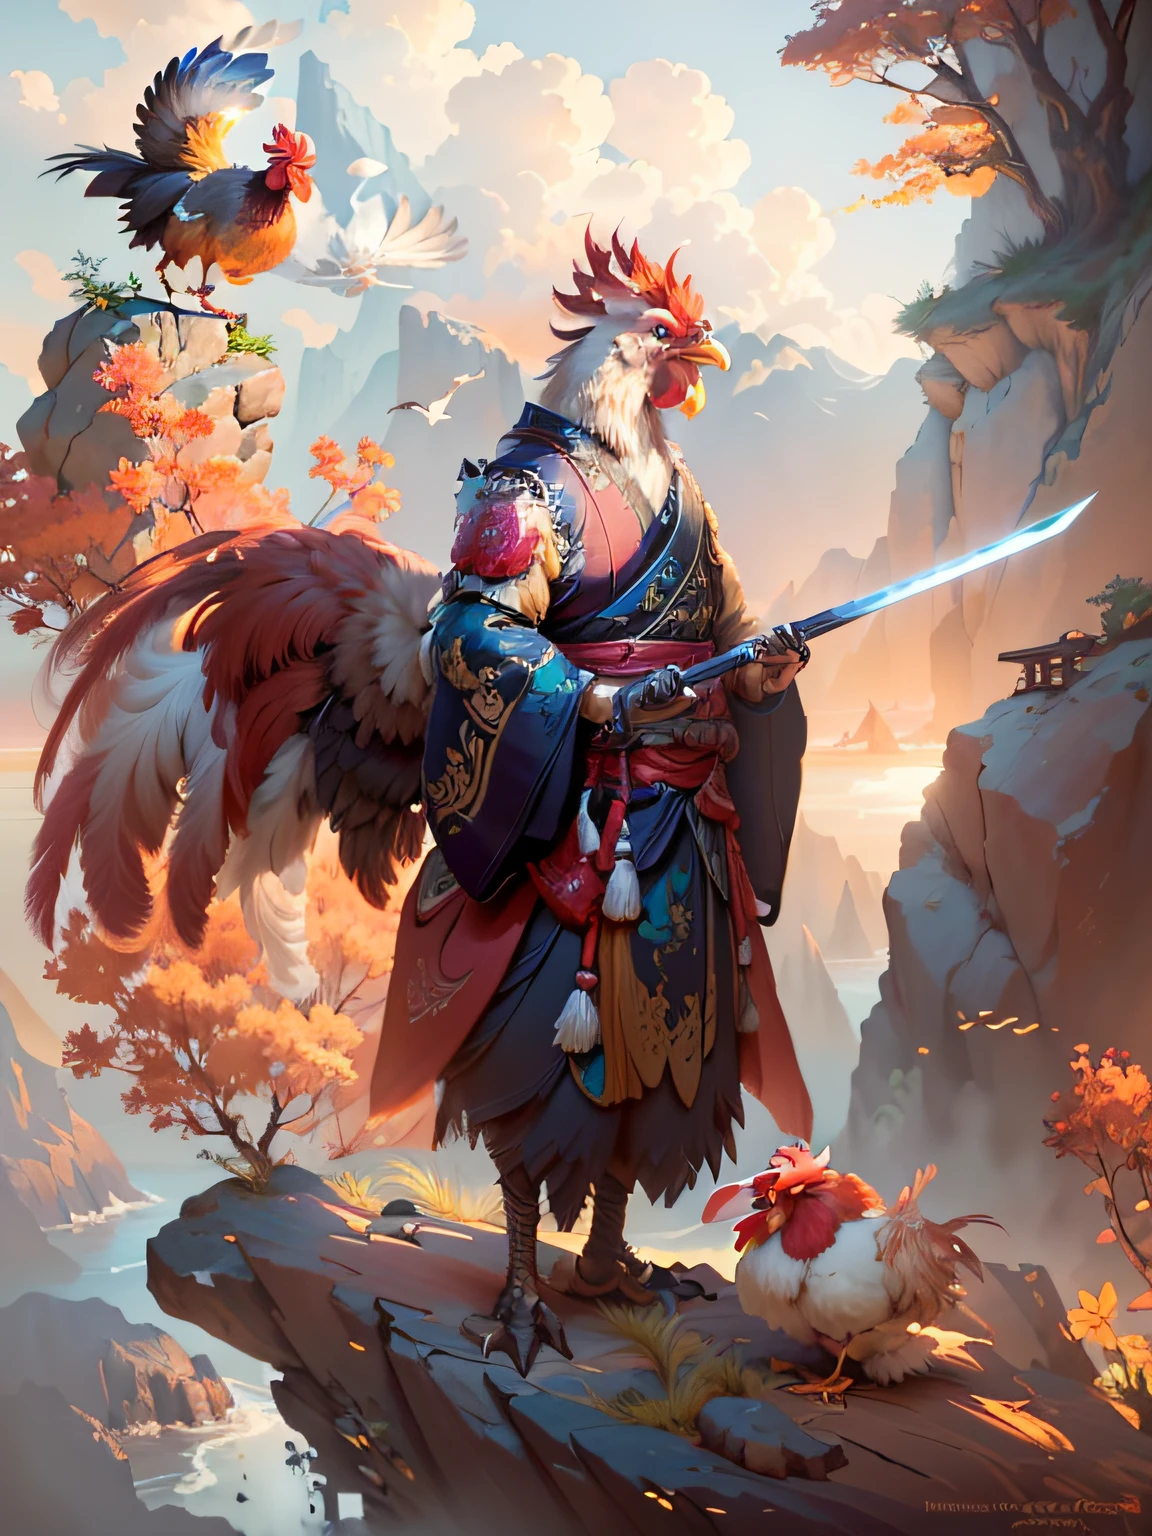 Dibuja un gallo con una espada y un pájaro sobre una roca., guerrero aviar, el rey del gallo, retrato del concepto de pato de fantasía, aves f cgsociety, Arte detallado de Onmyoji, arte de wlop y greg rutkowski, cgsociety y fenghua zhong, estilo artístico g liuliano, arte conceptual feng zhu, Inspirado por Hu Zaobin